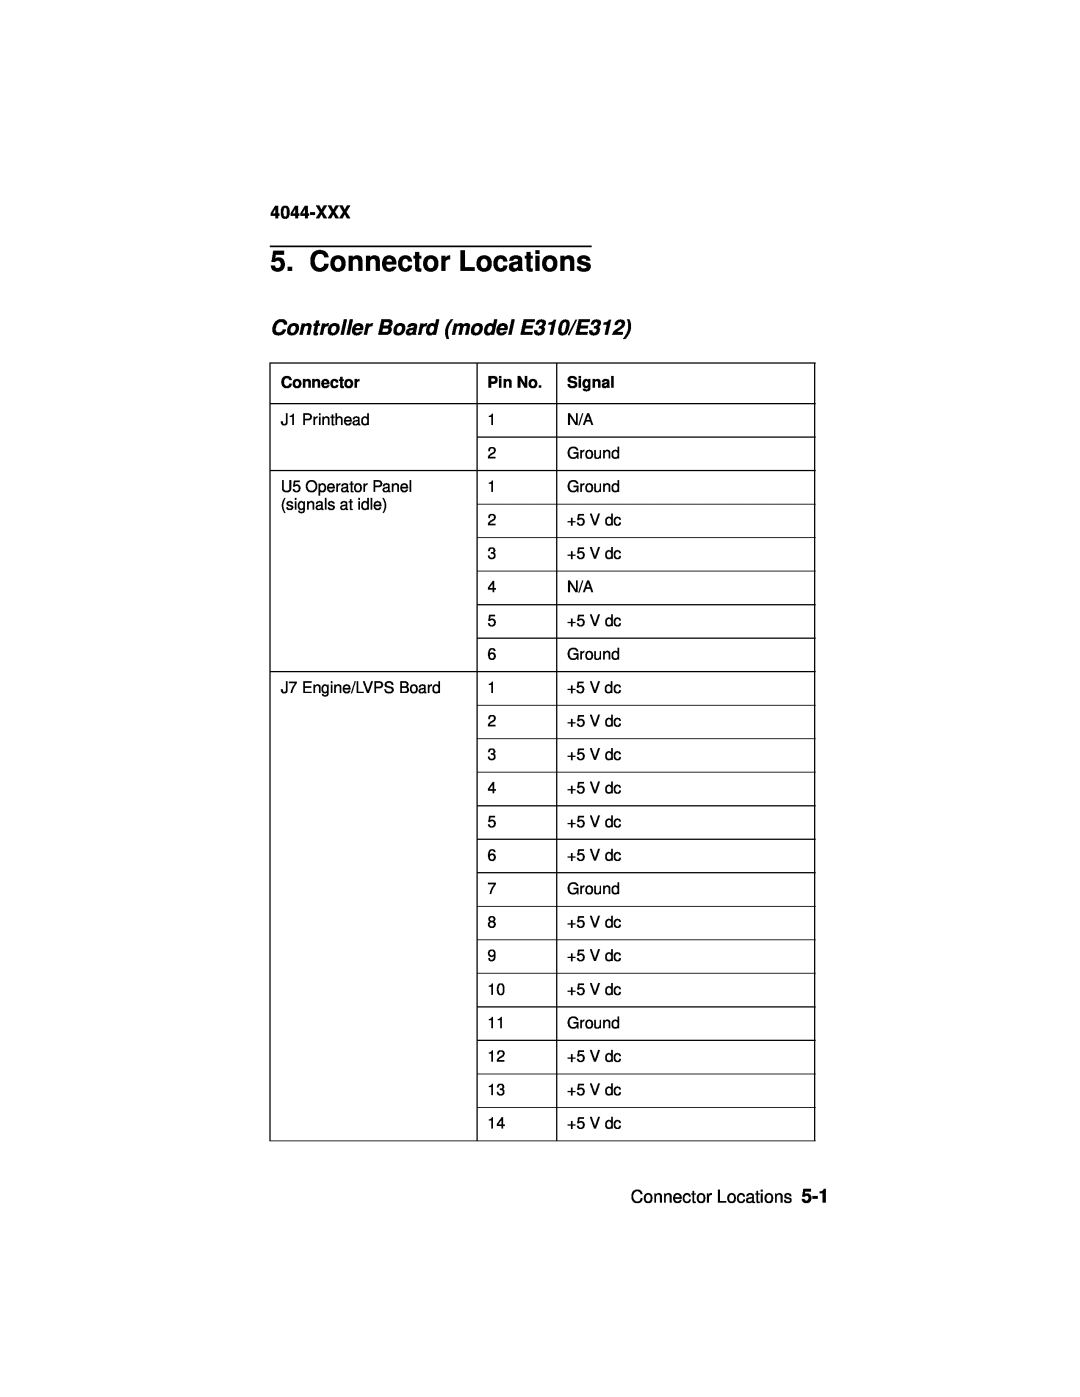 Lexmark manual Connector Locations, Controller Board model E310/E312, 4044-XXX, Pin No, Signal 